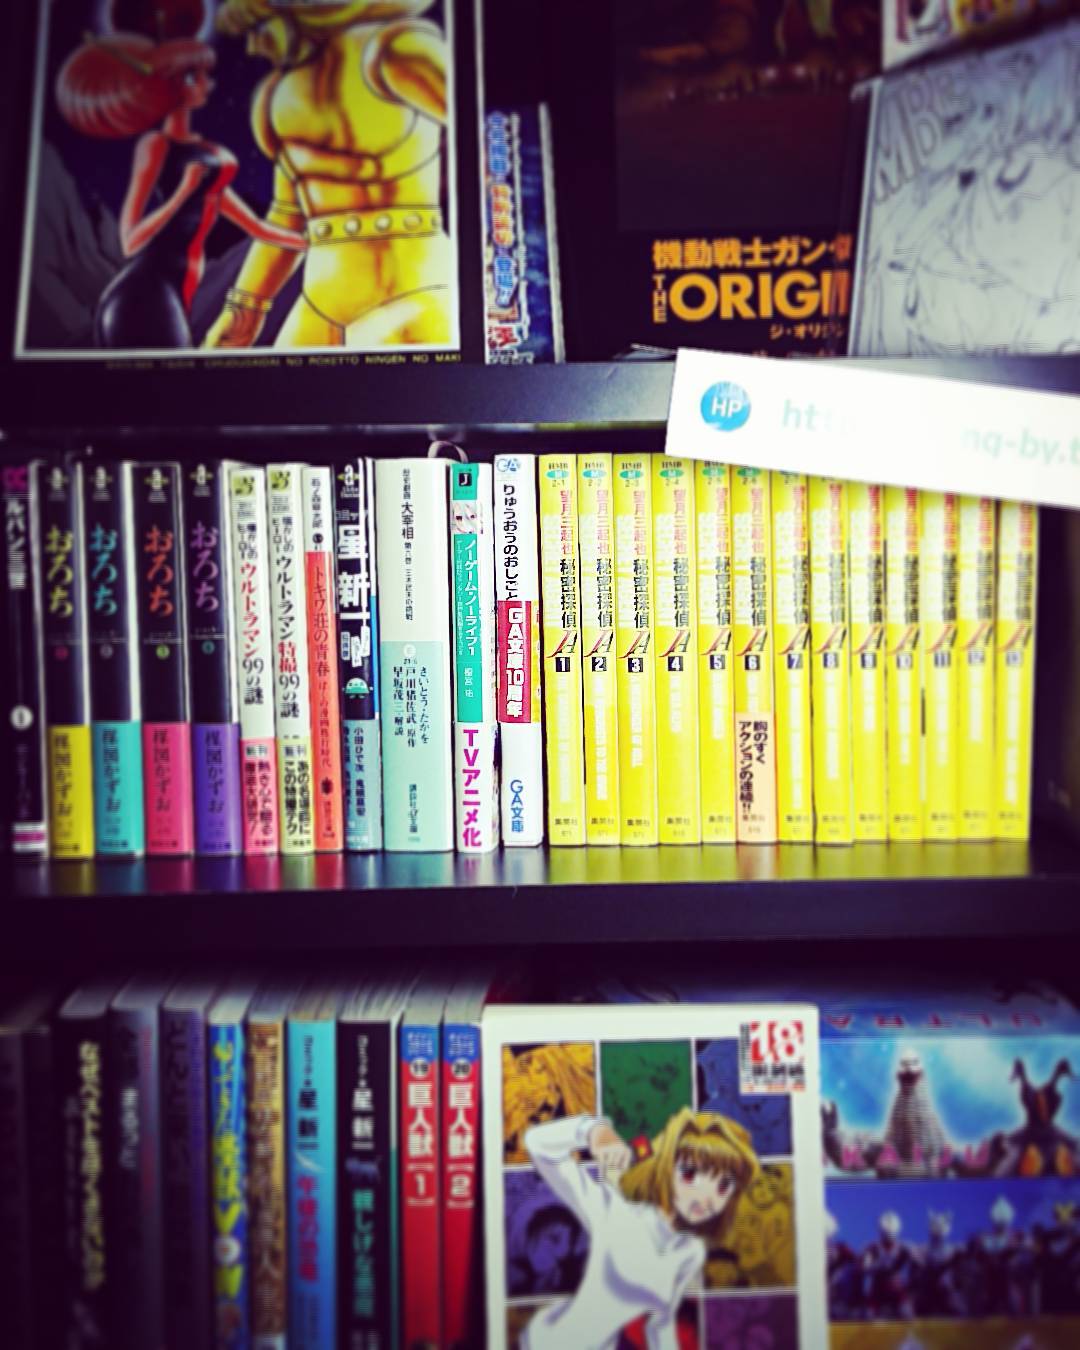 蔵書も増えてきました。 #otakubar